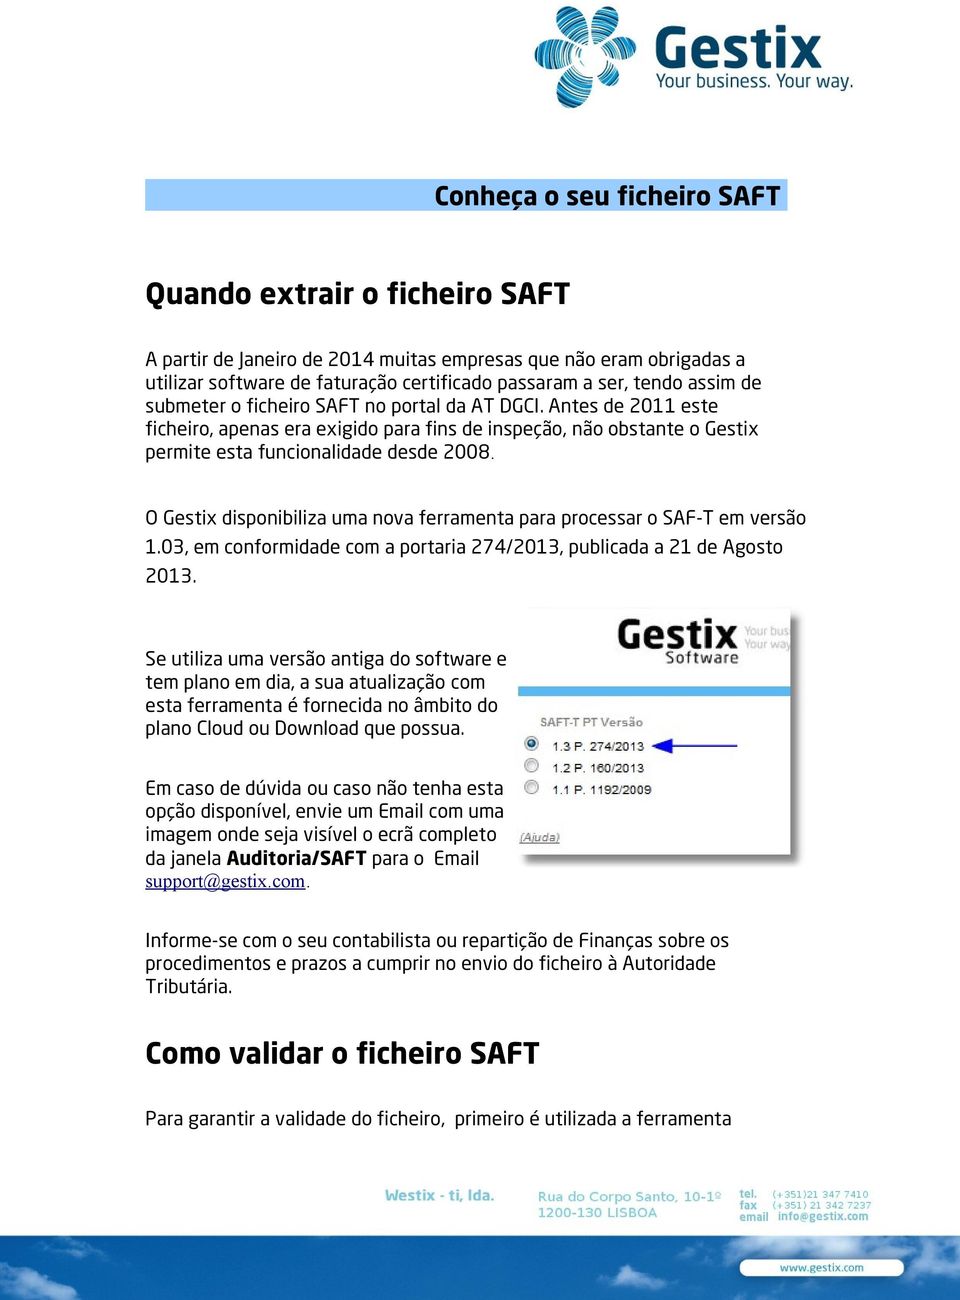 O Gestix disponibiliza uma nova ferramenta para processar o SAF-T em versão 1.03, em conformidade com a portaria 274/2013, publicada a 21 de Agosto 2013.